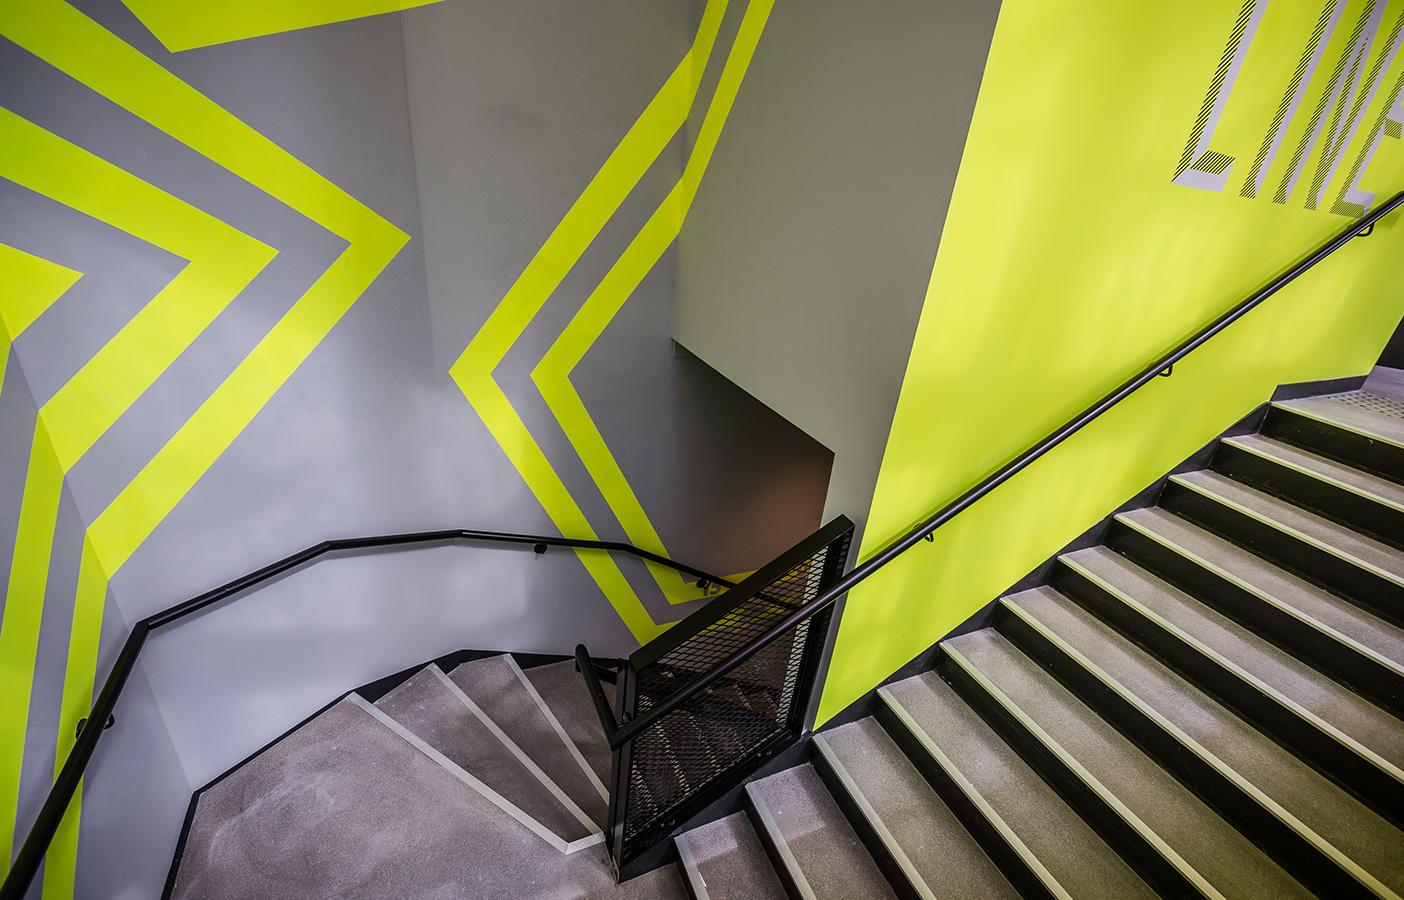 Aldworth James & Bond | Nike Store Les Halles, Paris - staircase decoration